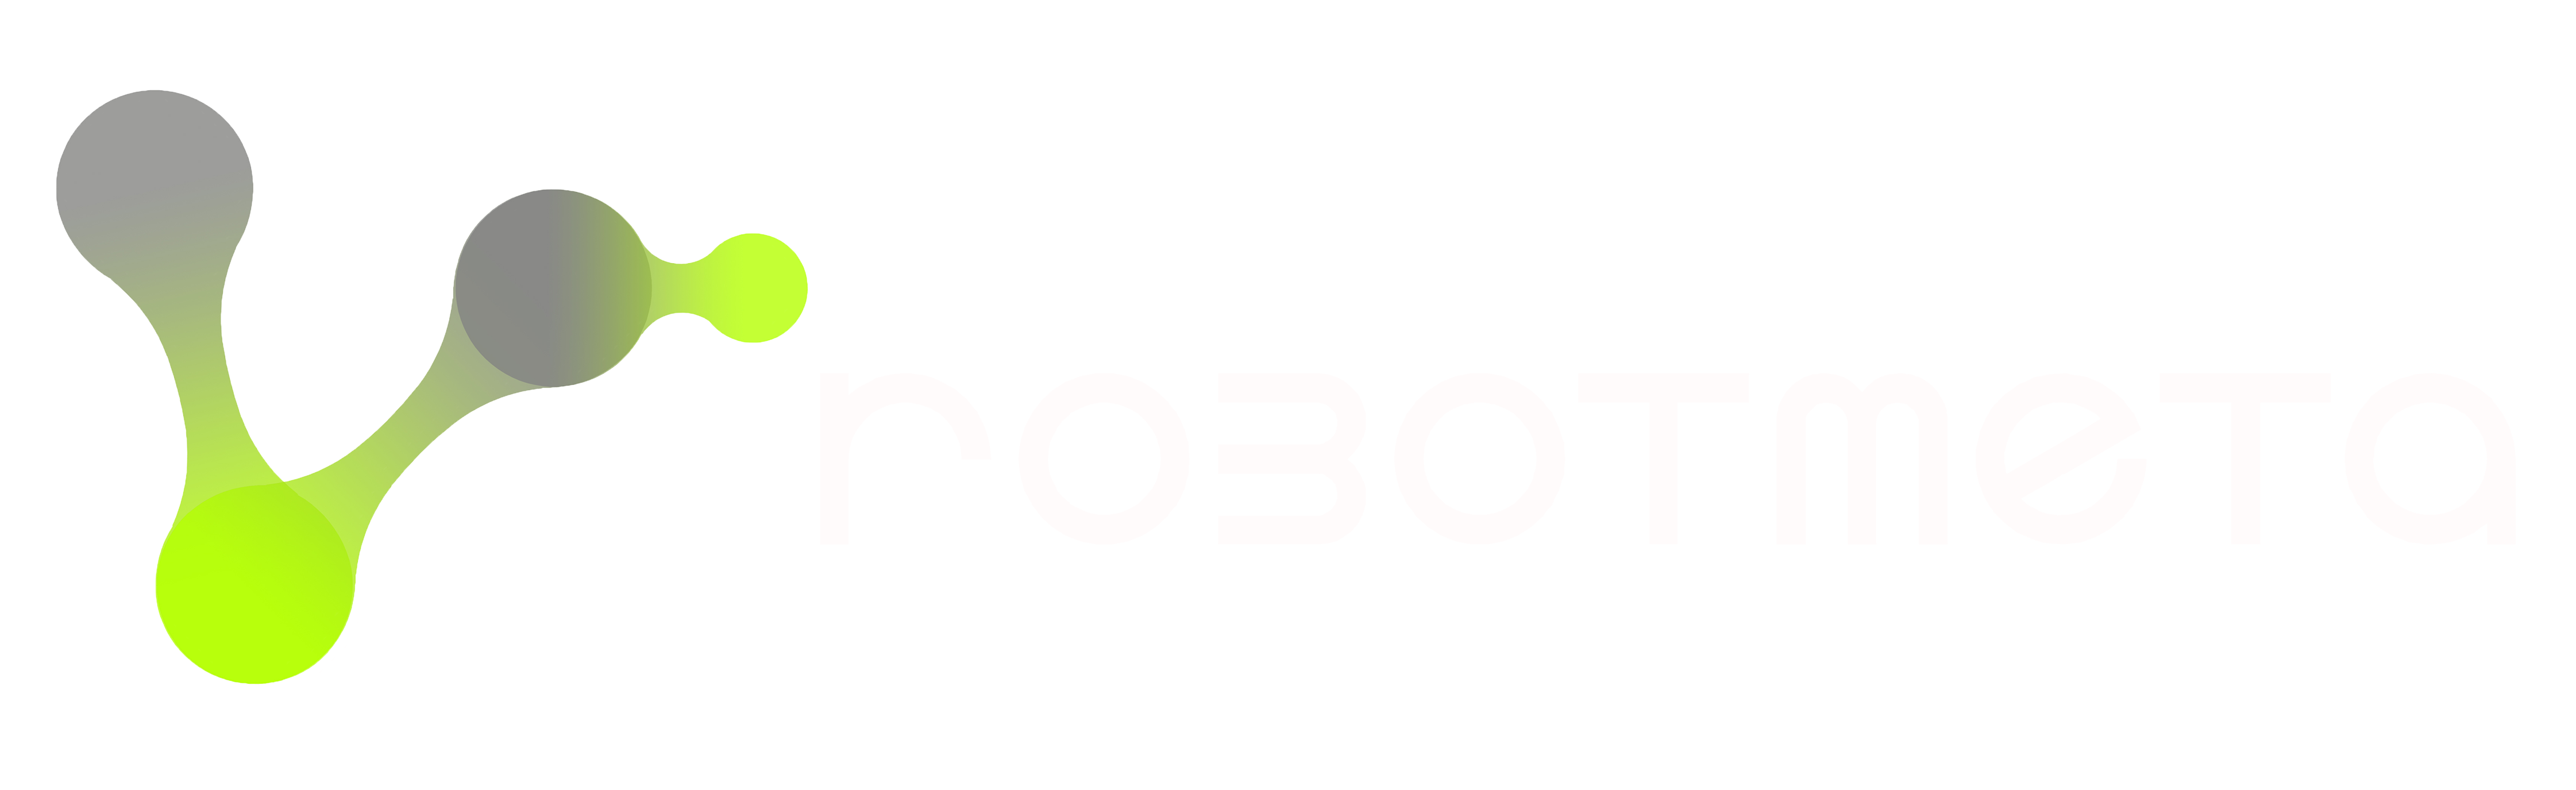 ROBOTMETA – Welding Robot,Laser welding,Internet welder